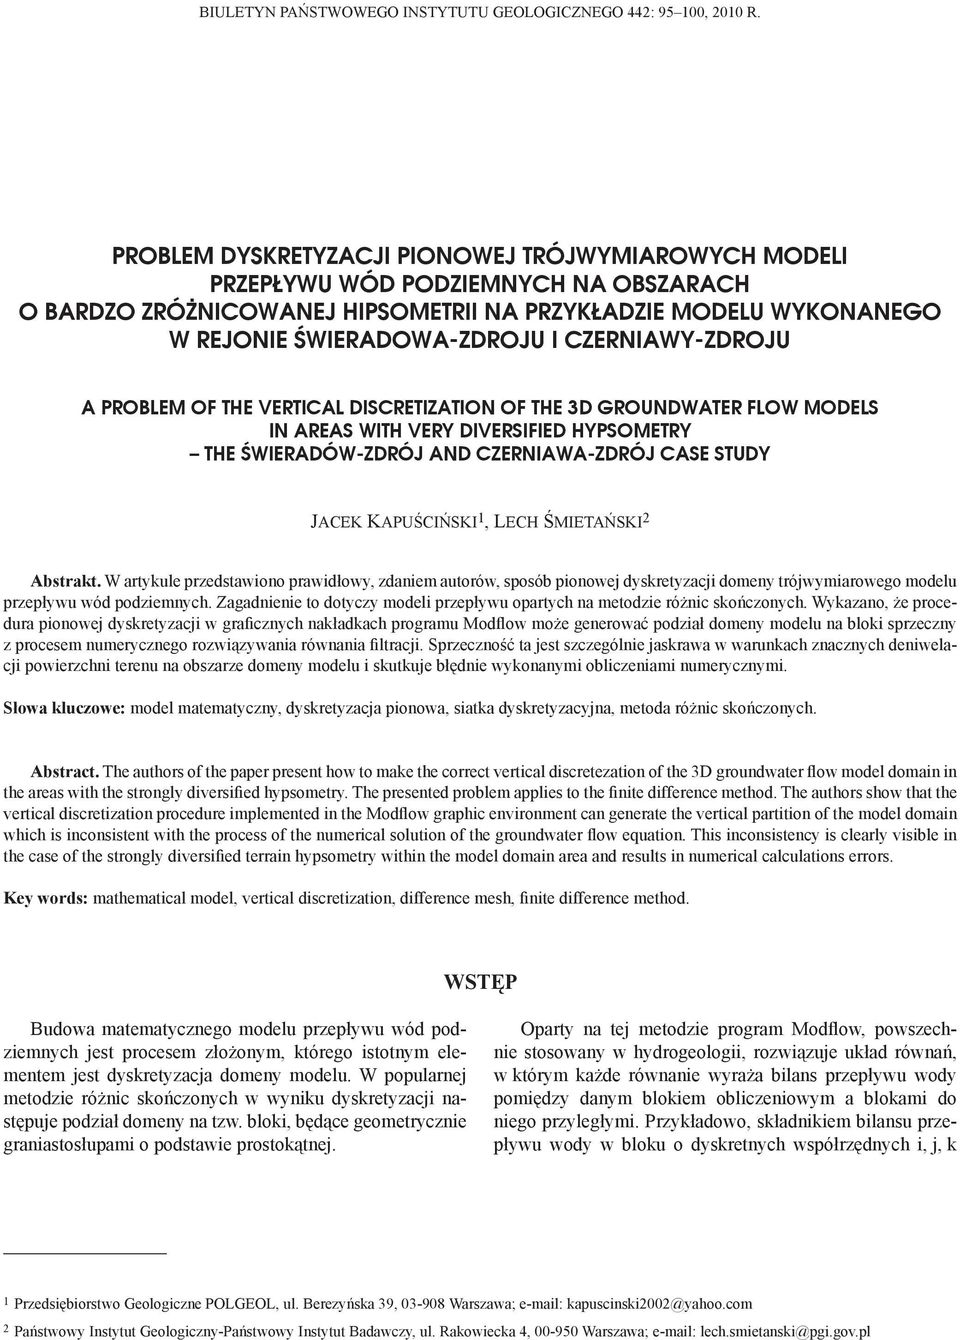 CZERNIAWY-ZDROJU A PROBLEM OF THE VERTICAL DISCRETIZATION OF THE 3D GROUNDWATER FLOW MODELS IN AREAS WITH VERY DIVERSIFIED HYPSOMETRY THE ŚWIERADÓW-ZDRÓJ AND CZERNIAWA-ZDRÓJ CASE STUDY JACEK